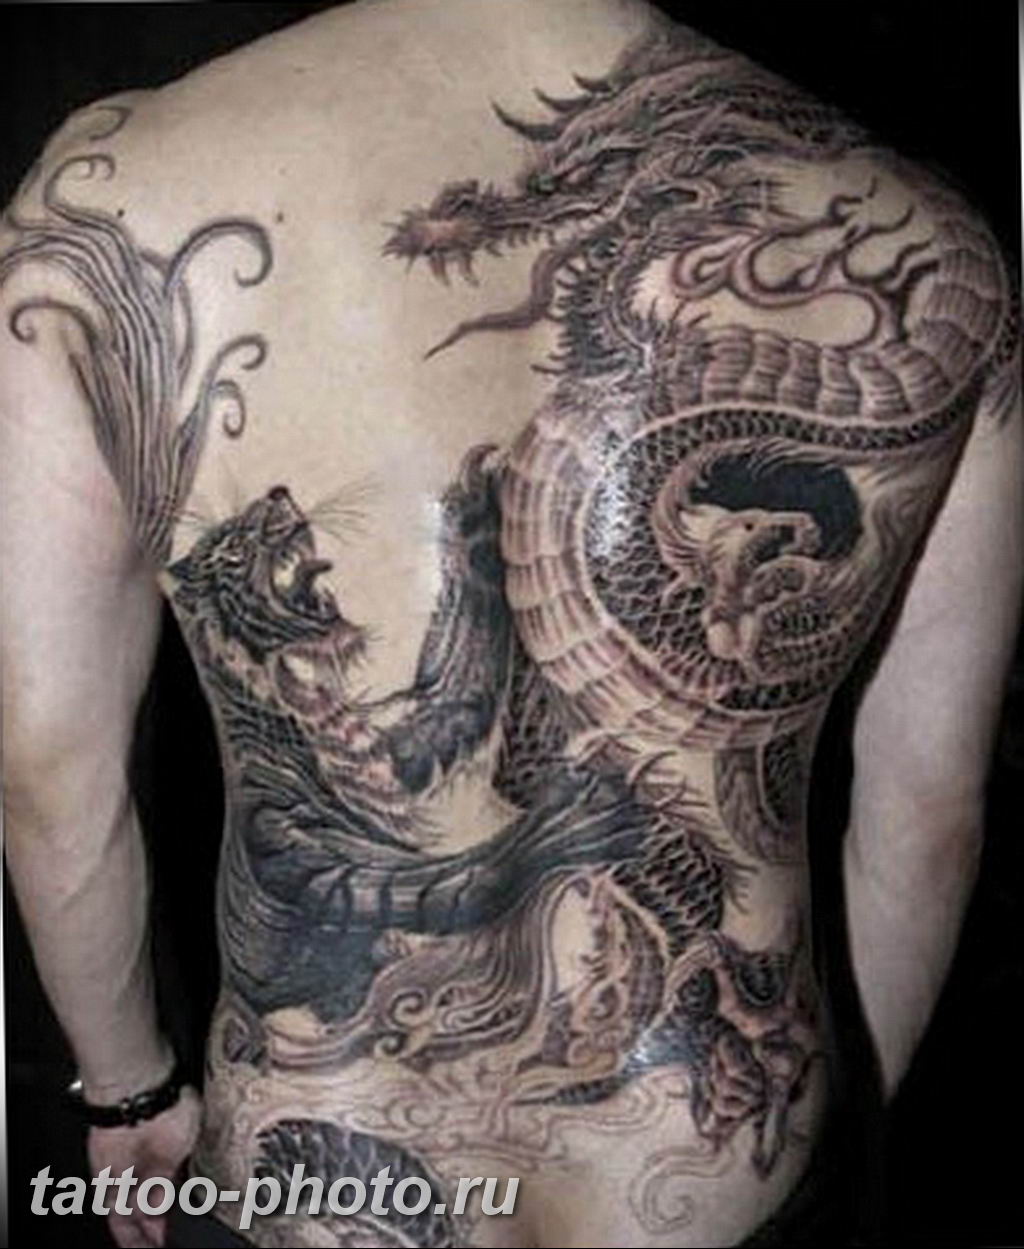 Фото тату дракона на спине